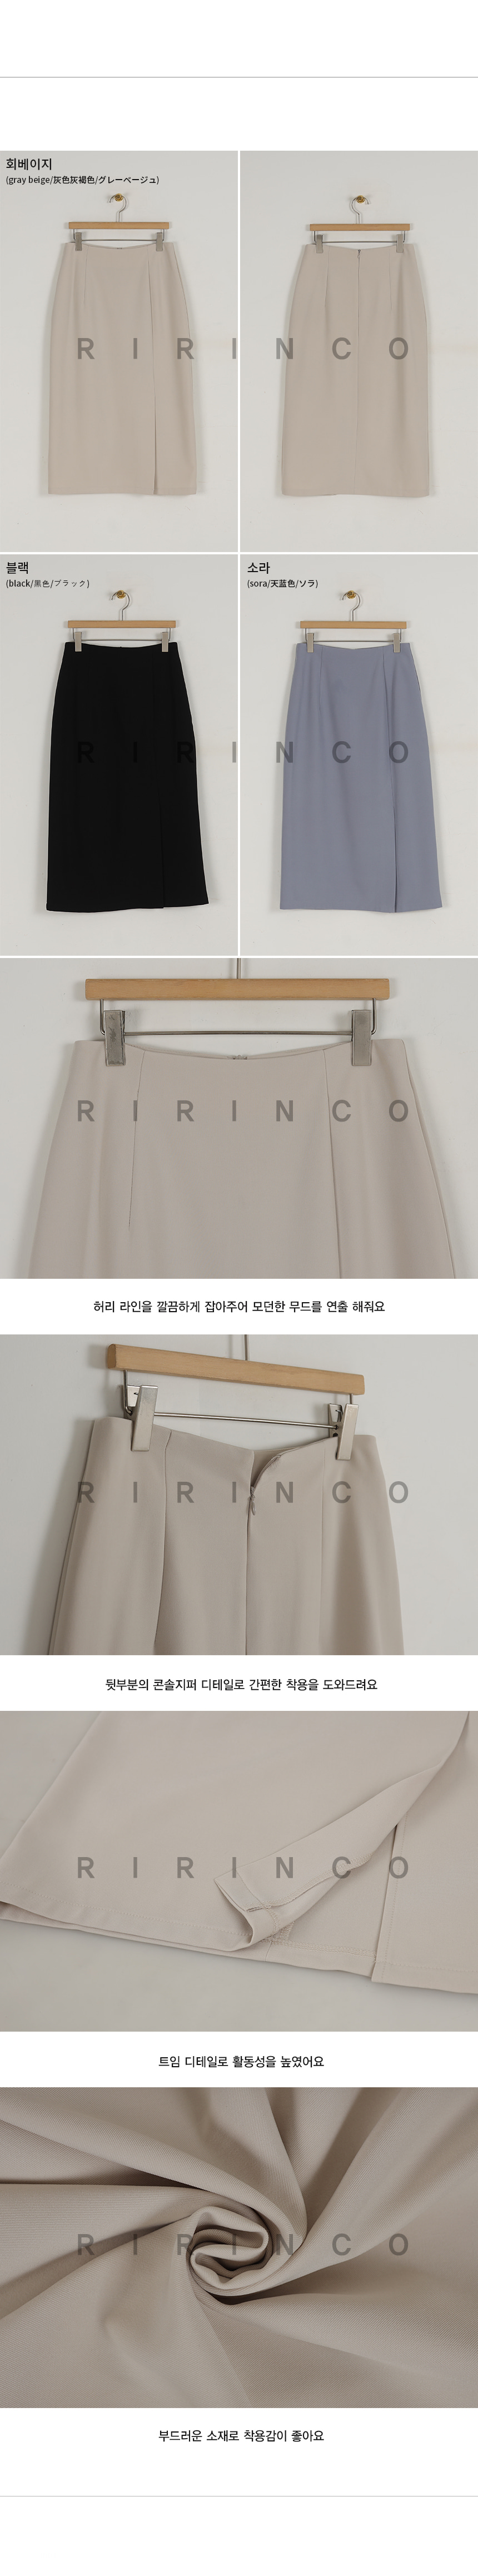 RIRINCO Hラインサイドスリットロングスカート